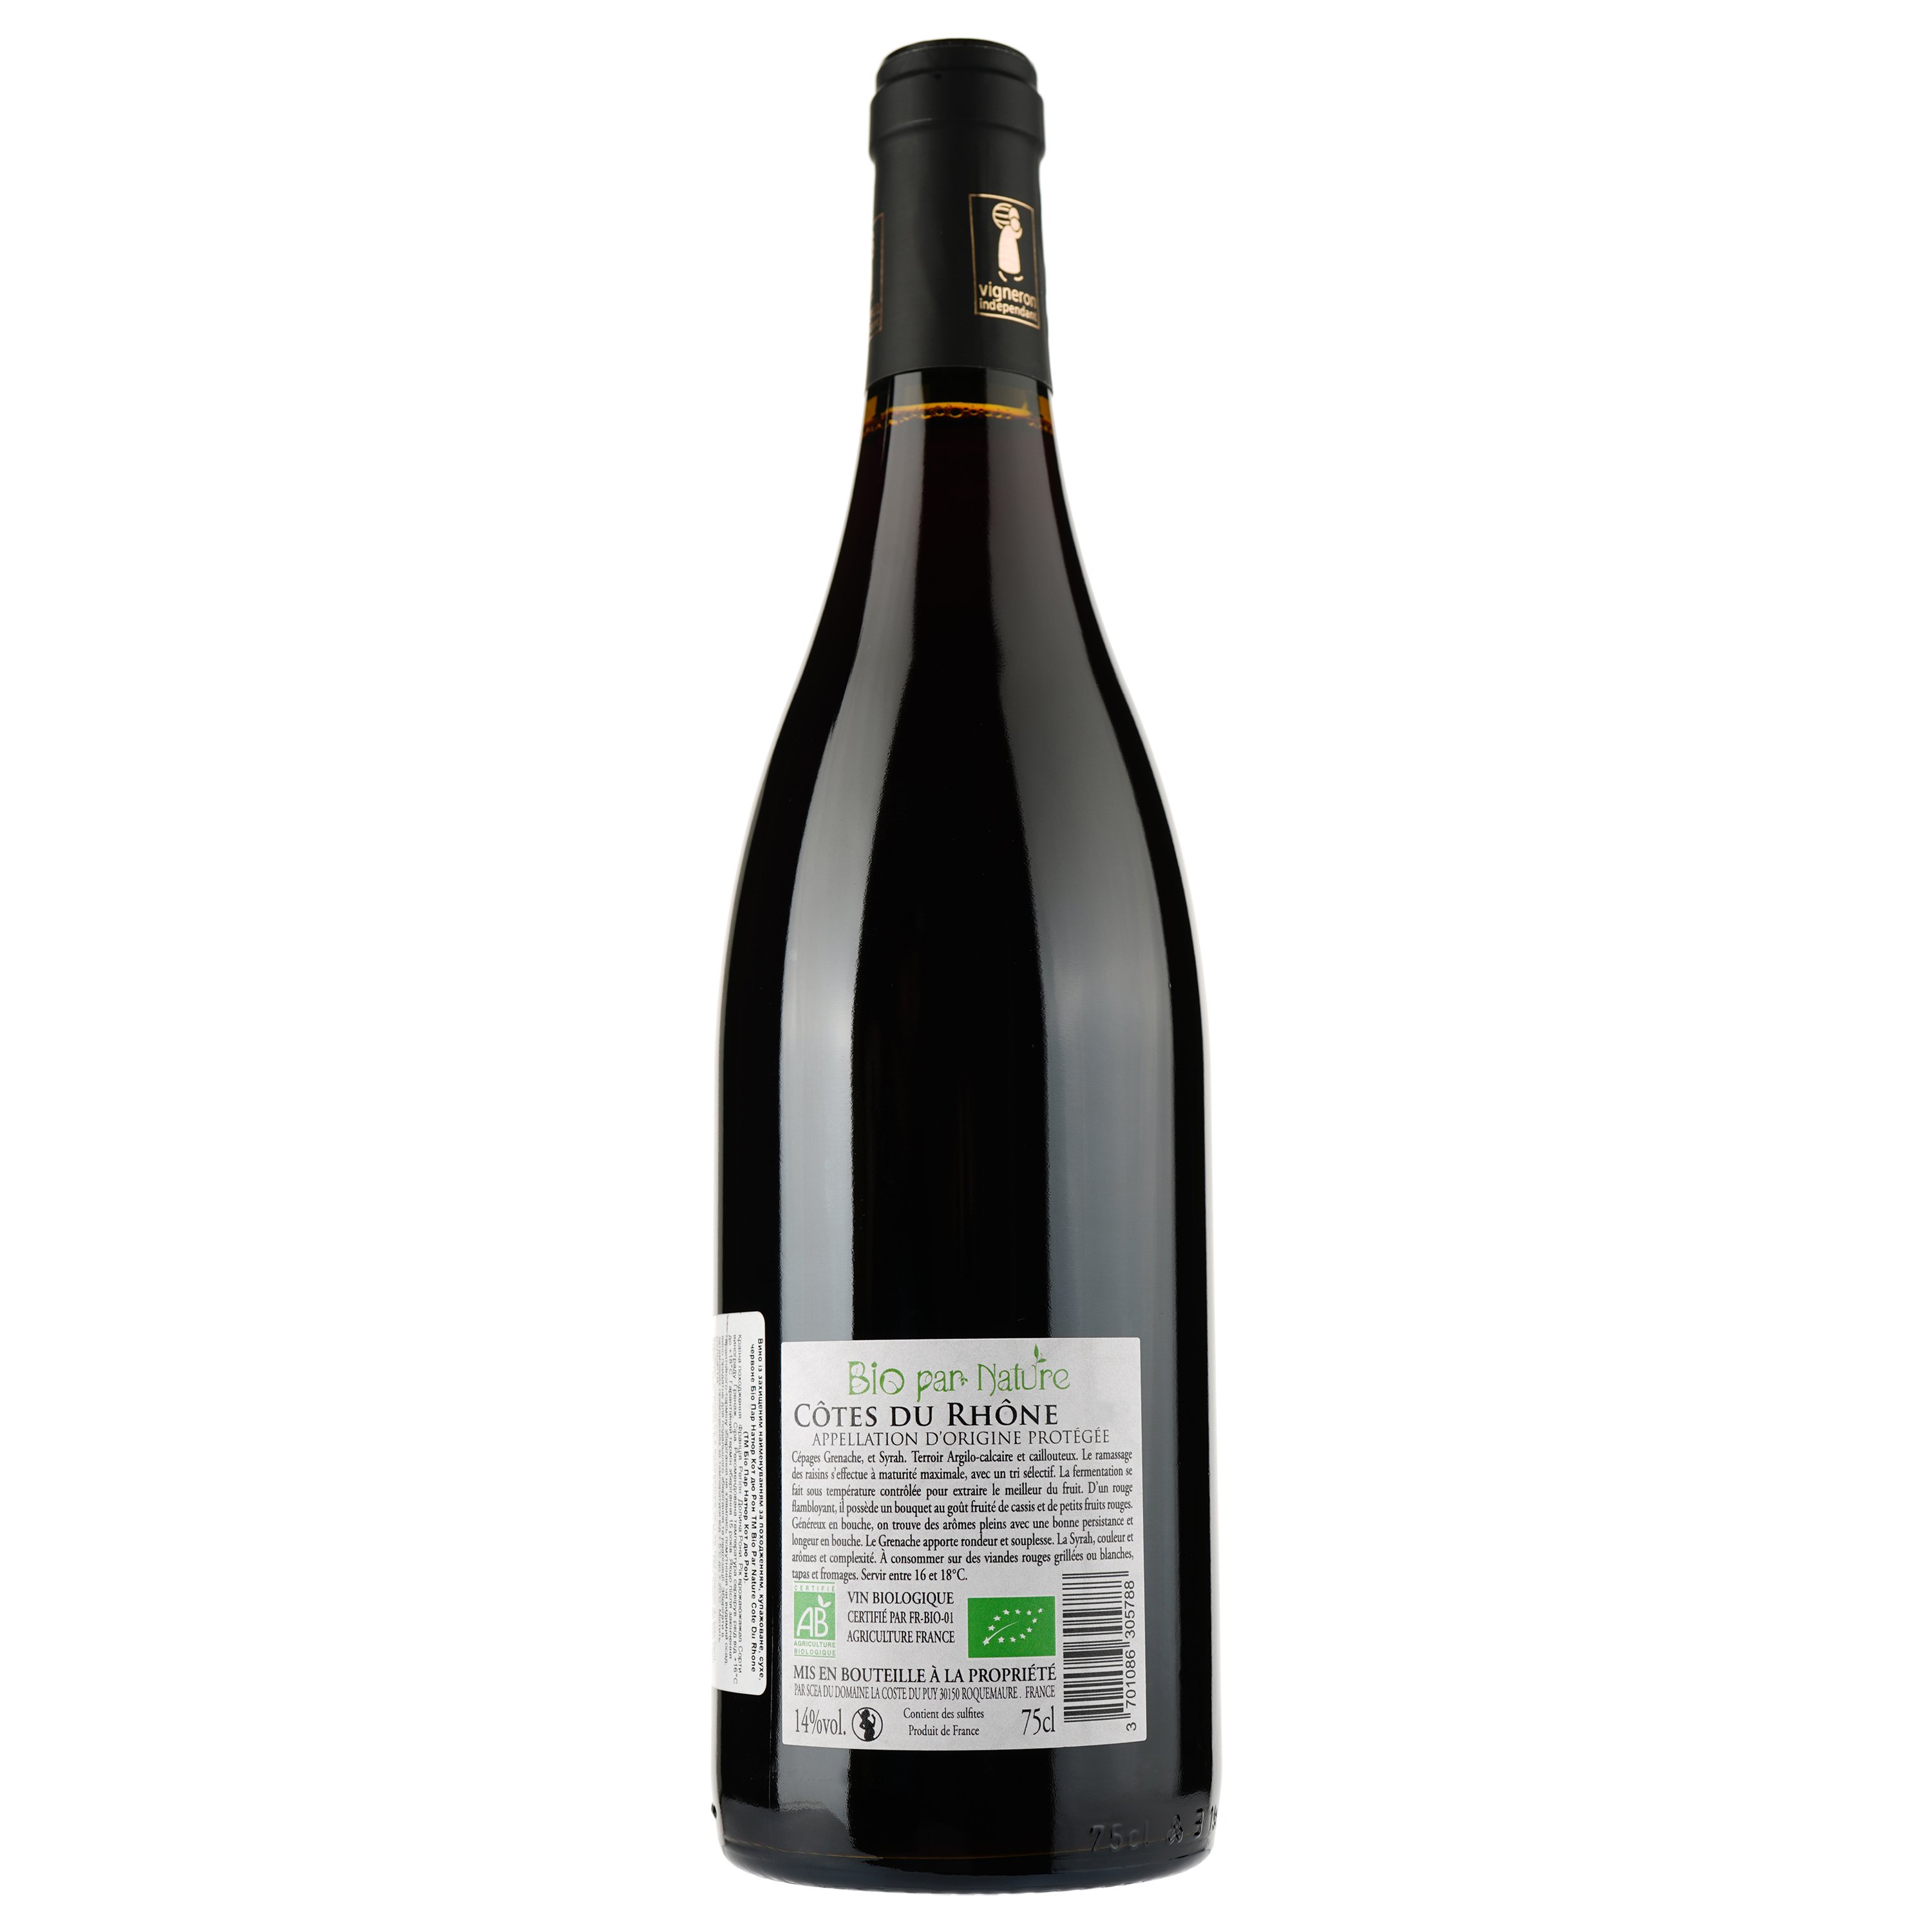 Вино Bio Par Nature 2019 AOP Cotes du Rhone, красное, сухое, 0,75 л - фото 2